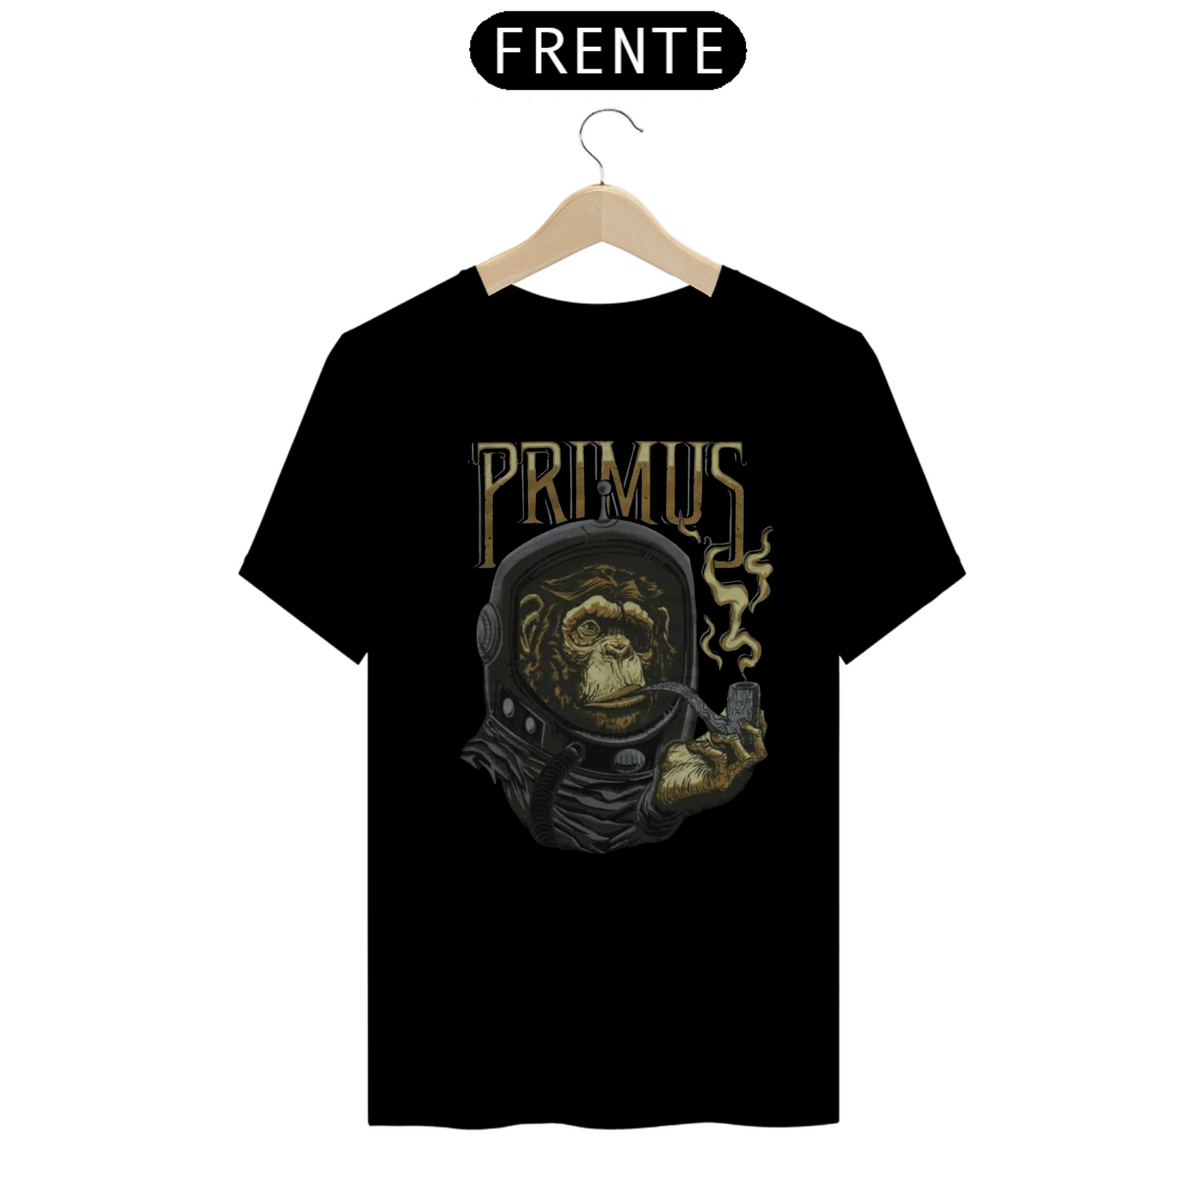 Nome do produto: Primus